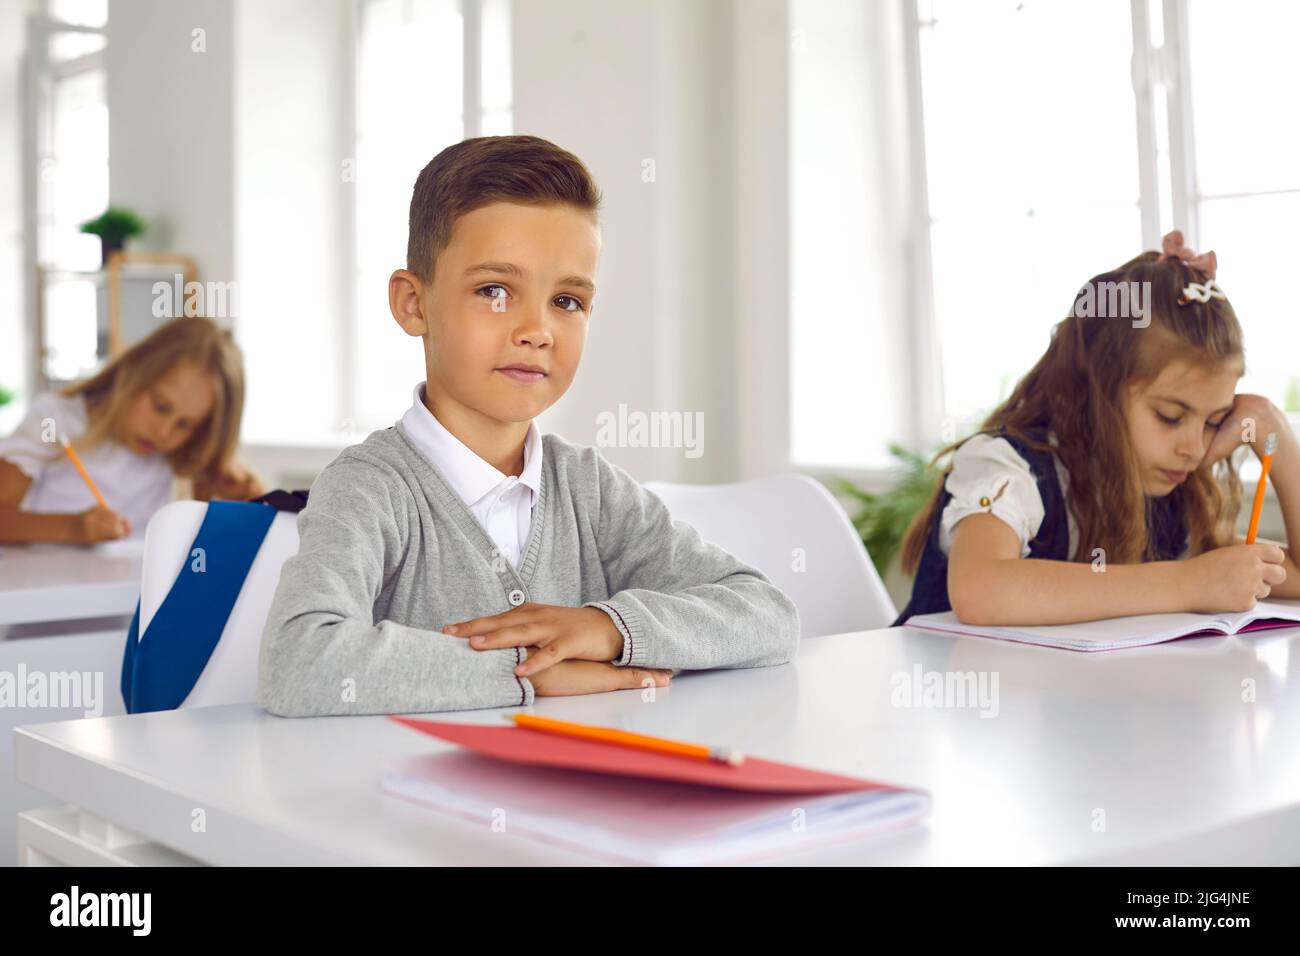 Ritratto di carino sorridente scolaro seduto in aula con le braccia ripiegate in piano sulla scrivania. Foto Stock